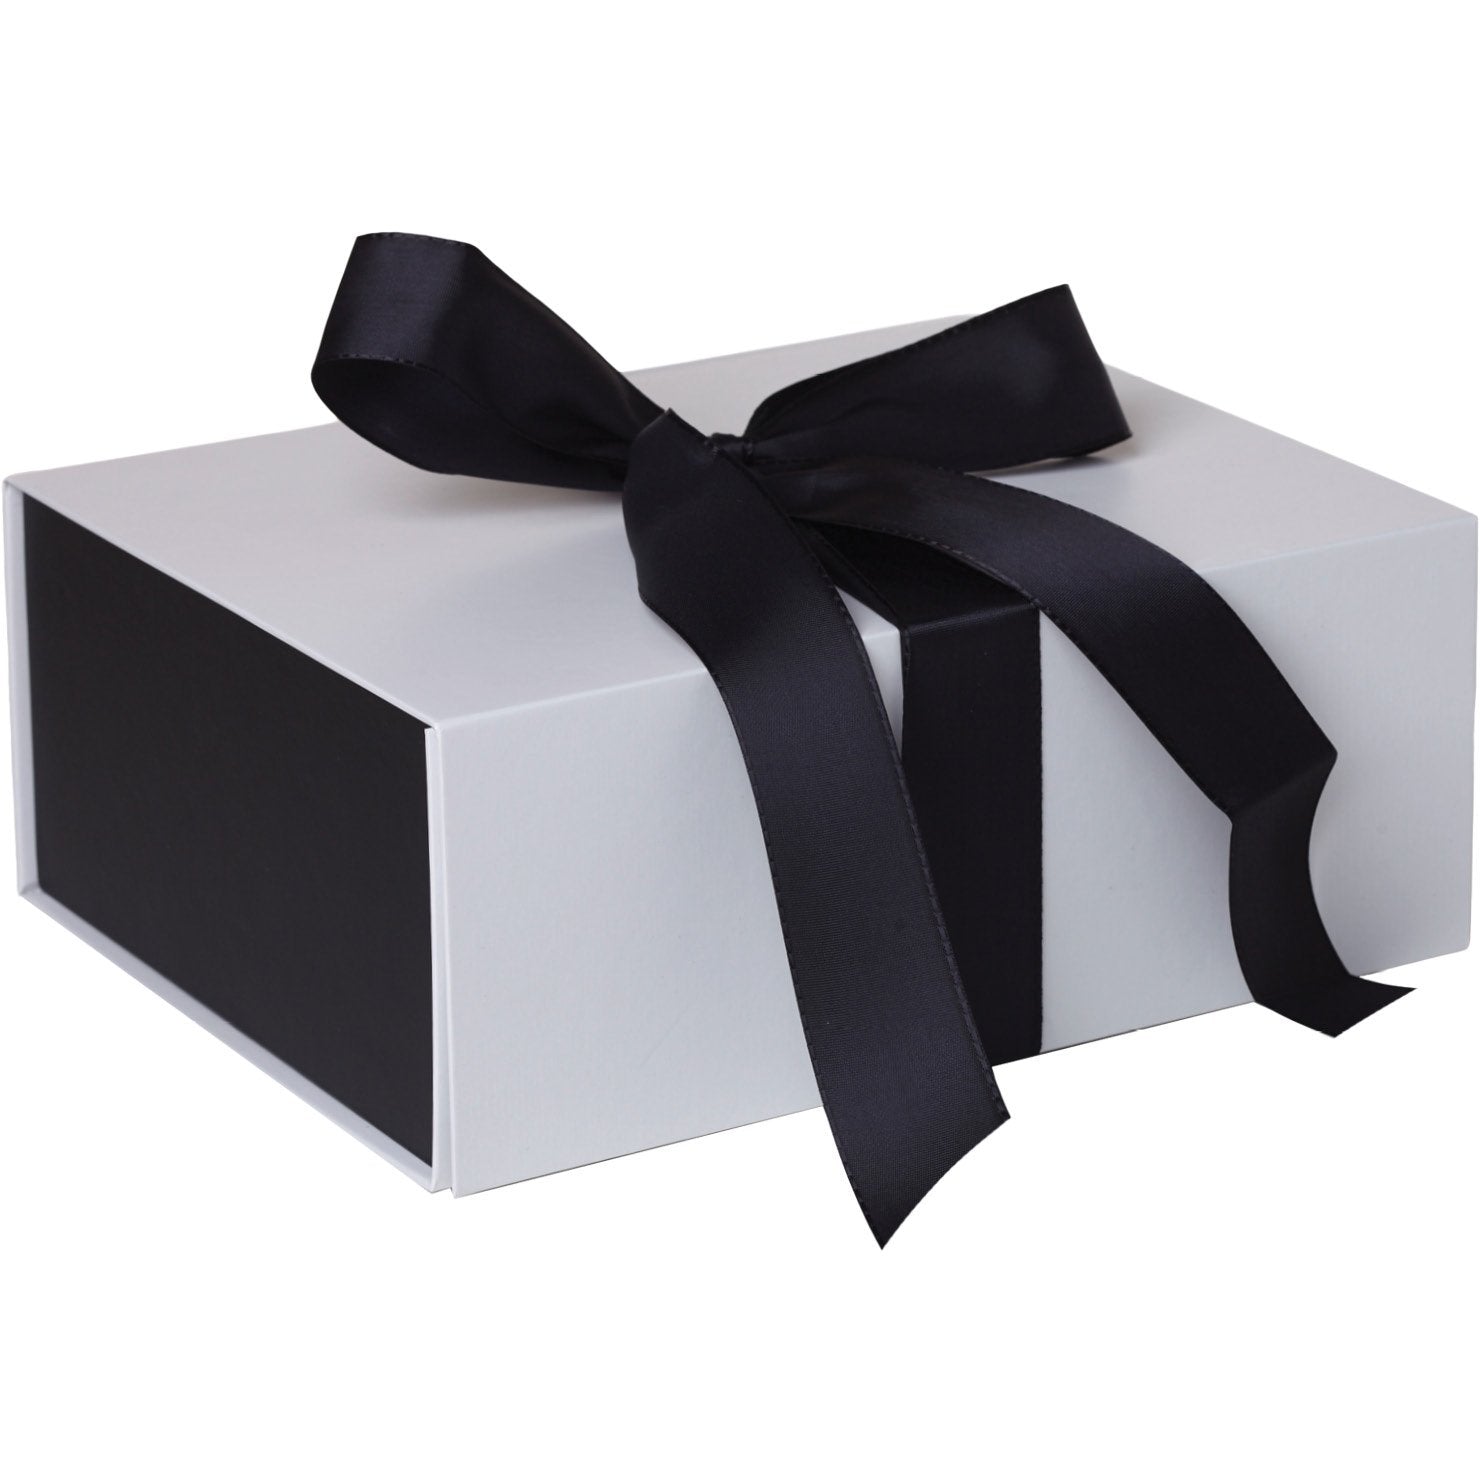 Jillson & Roberts Large Gift Box with Ribbon Tie